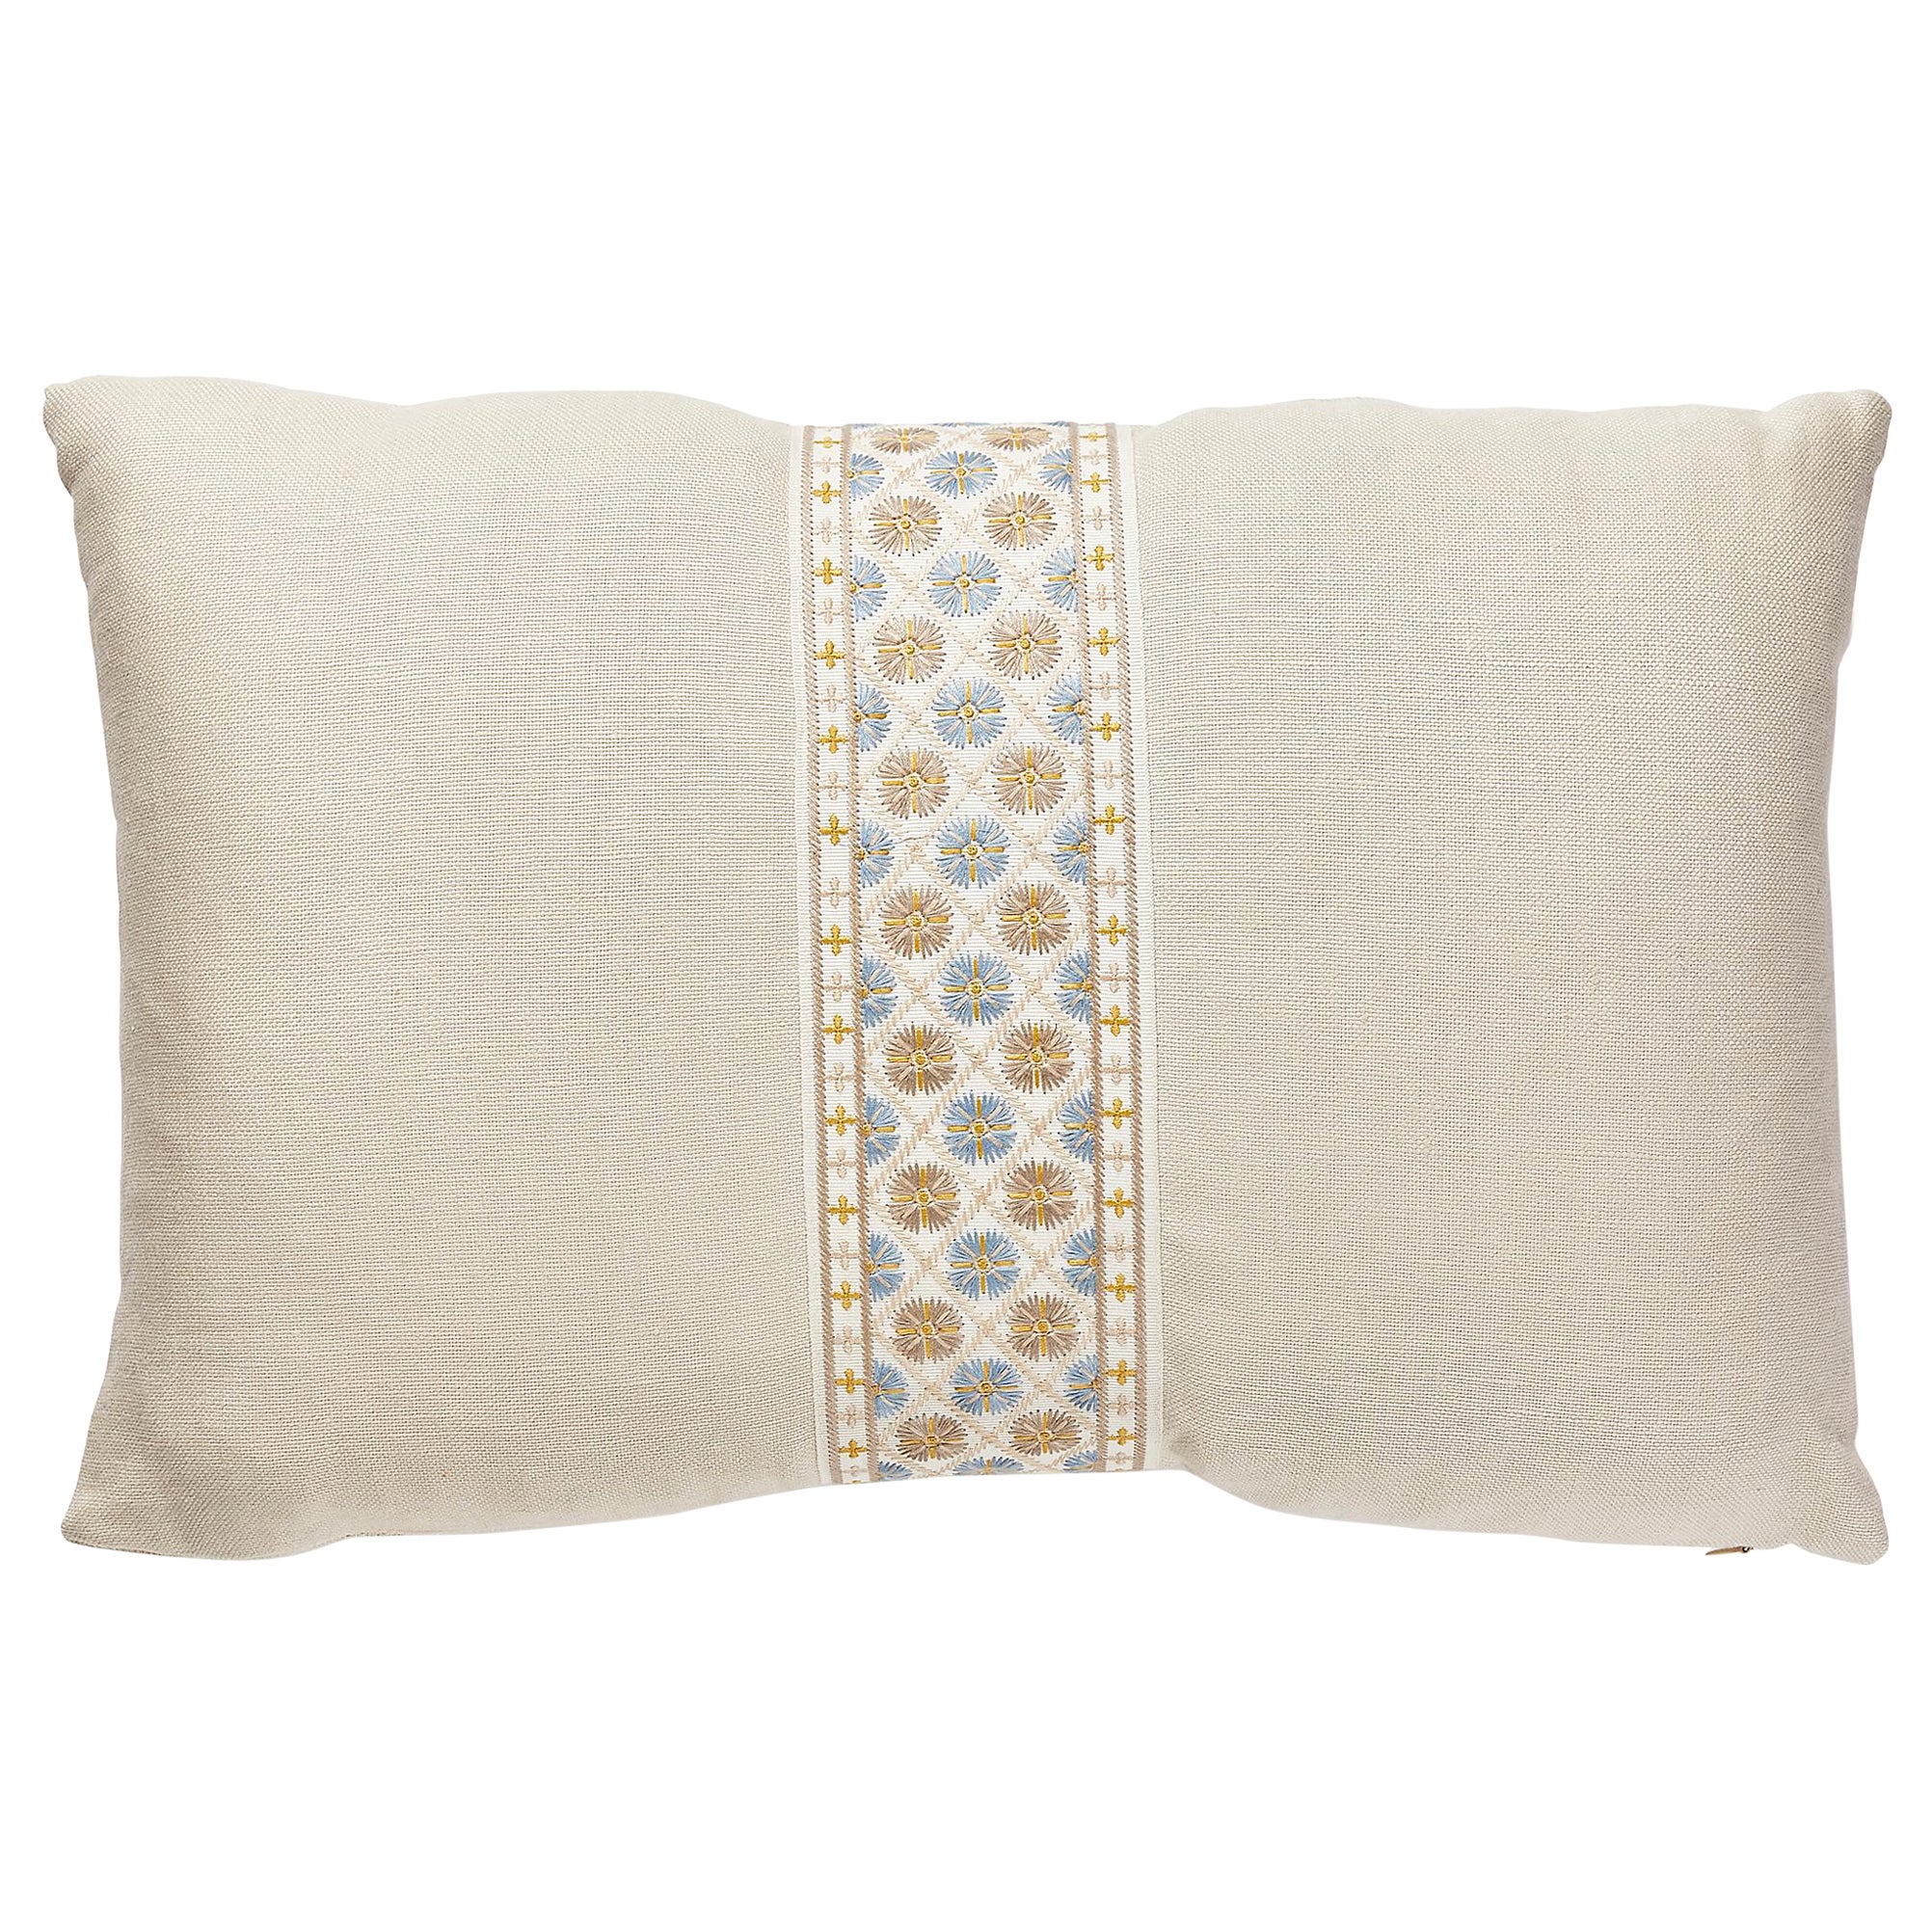 Toscana/Hansel Lumbar Pillow